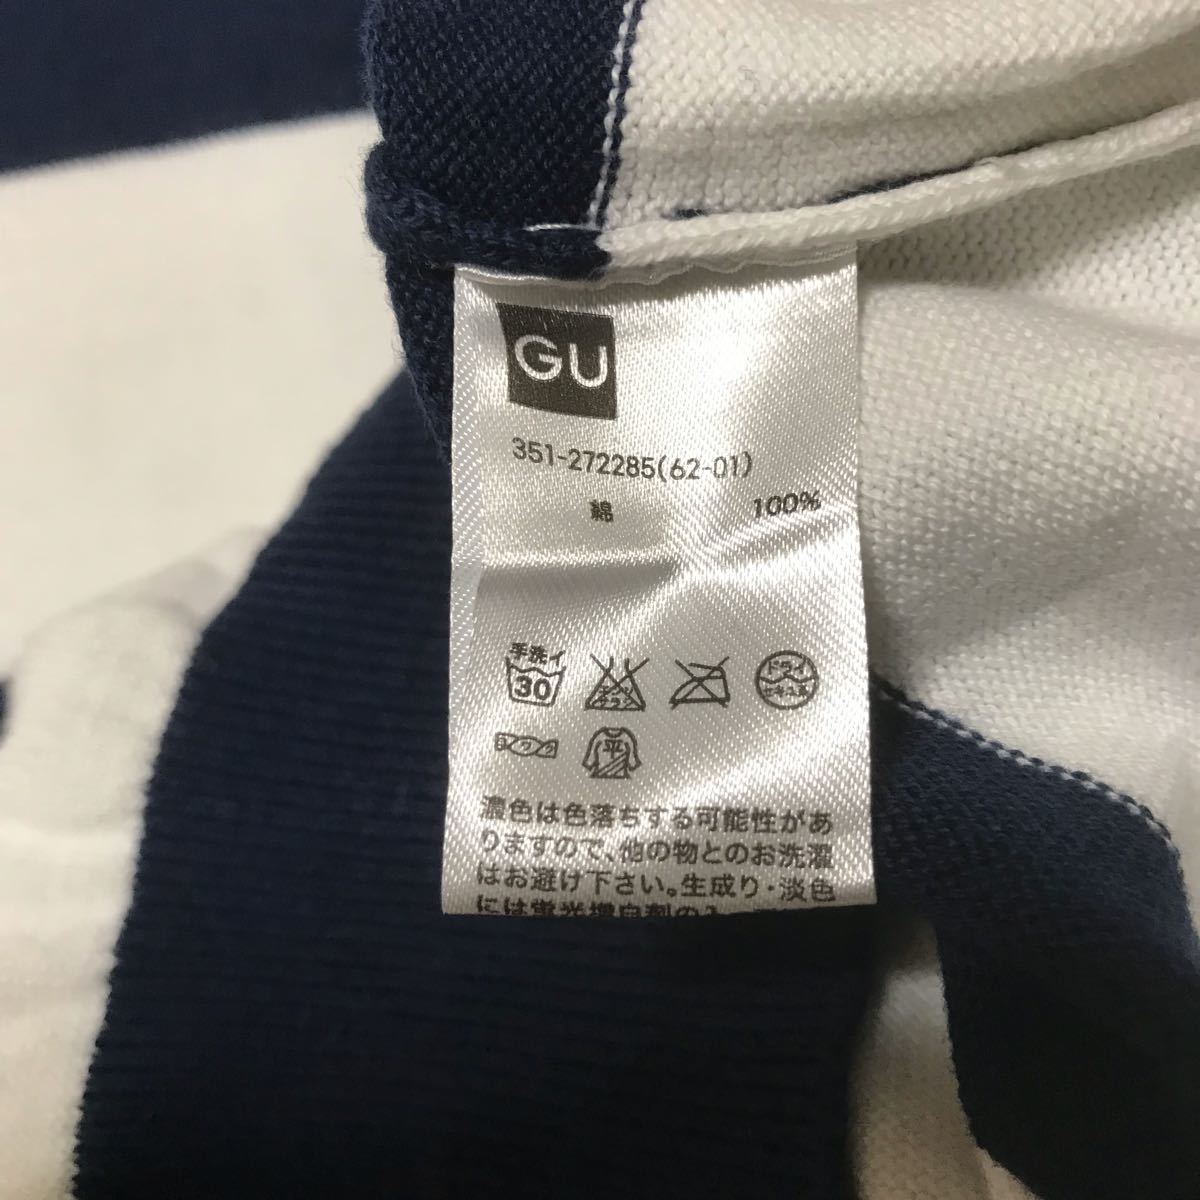 GU コットンボーダークルーネックセーター 白/紺 Mサイズ